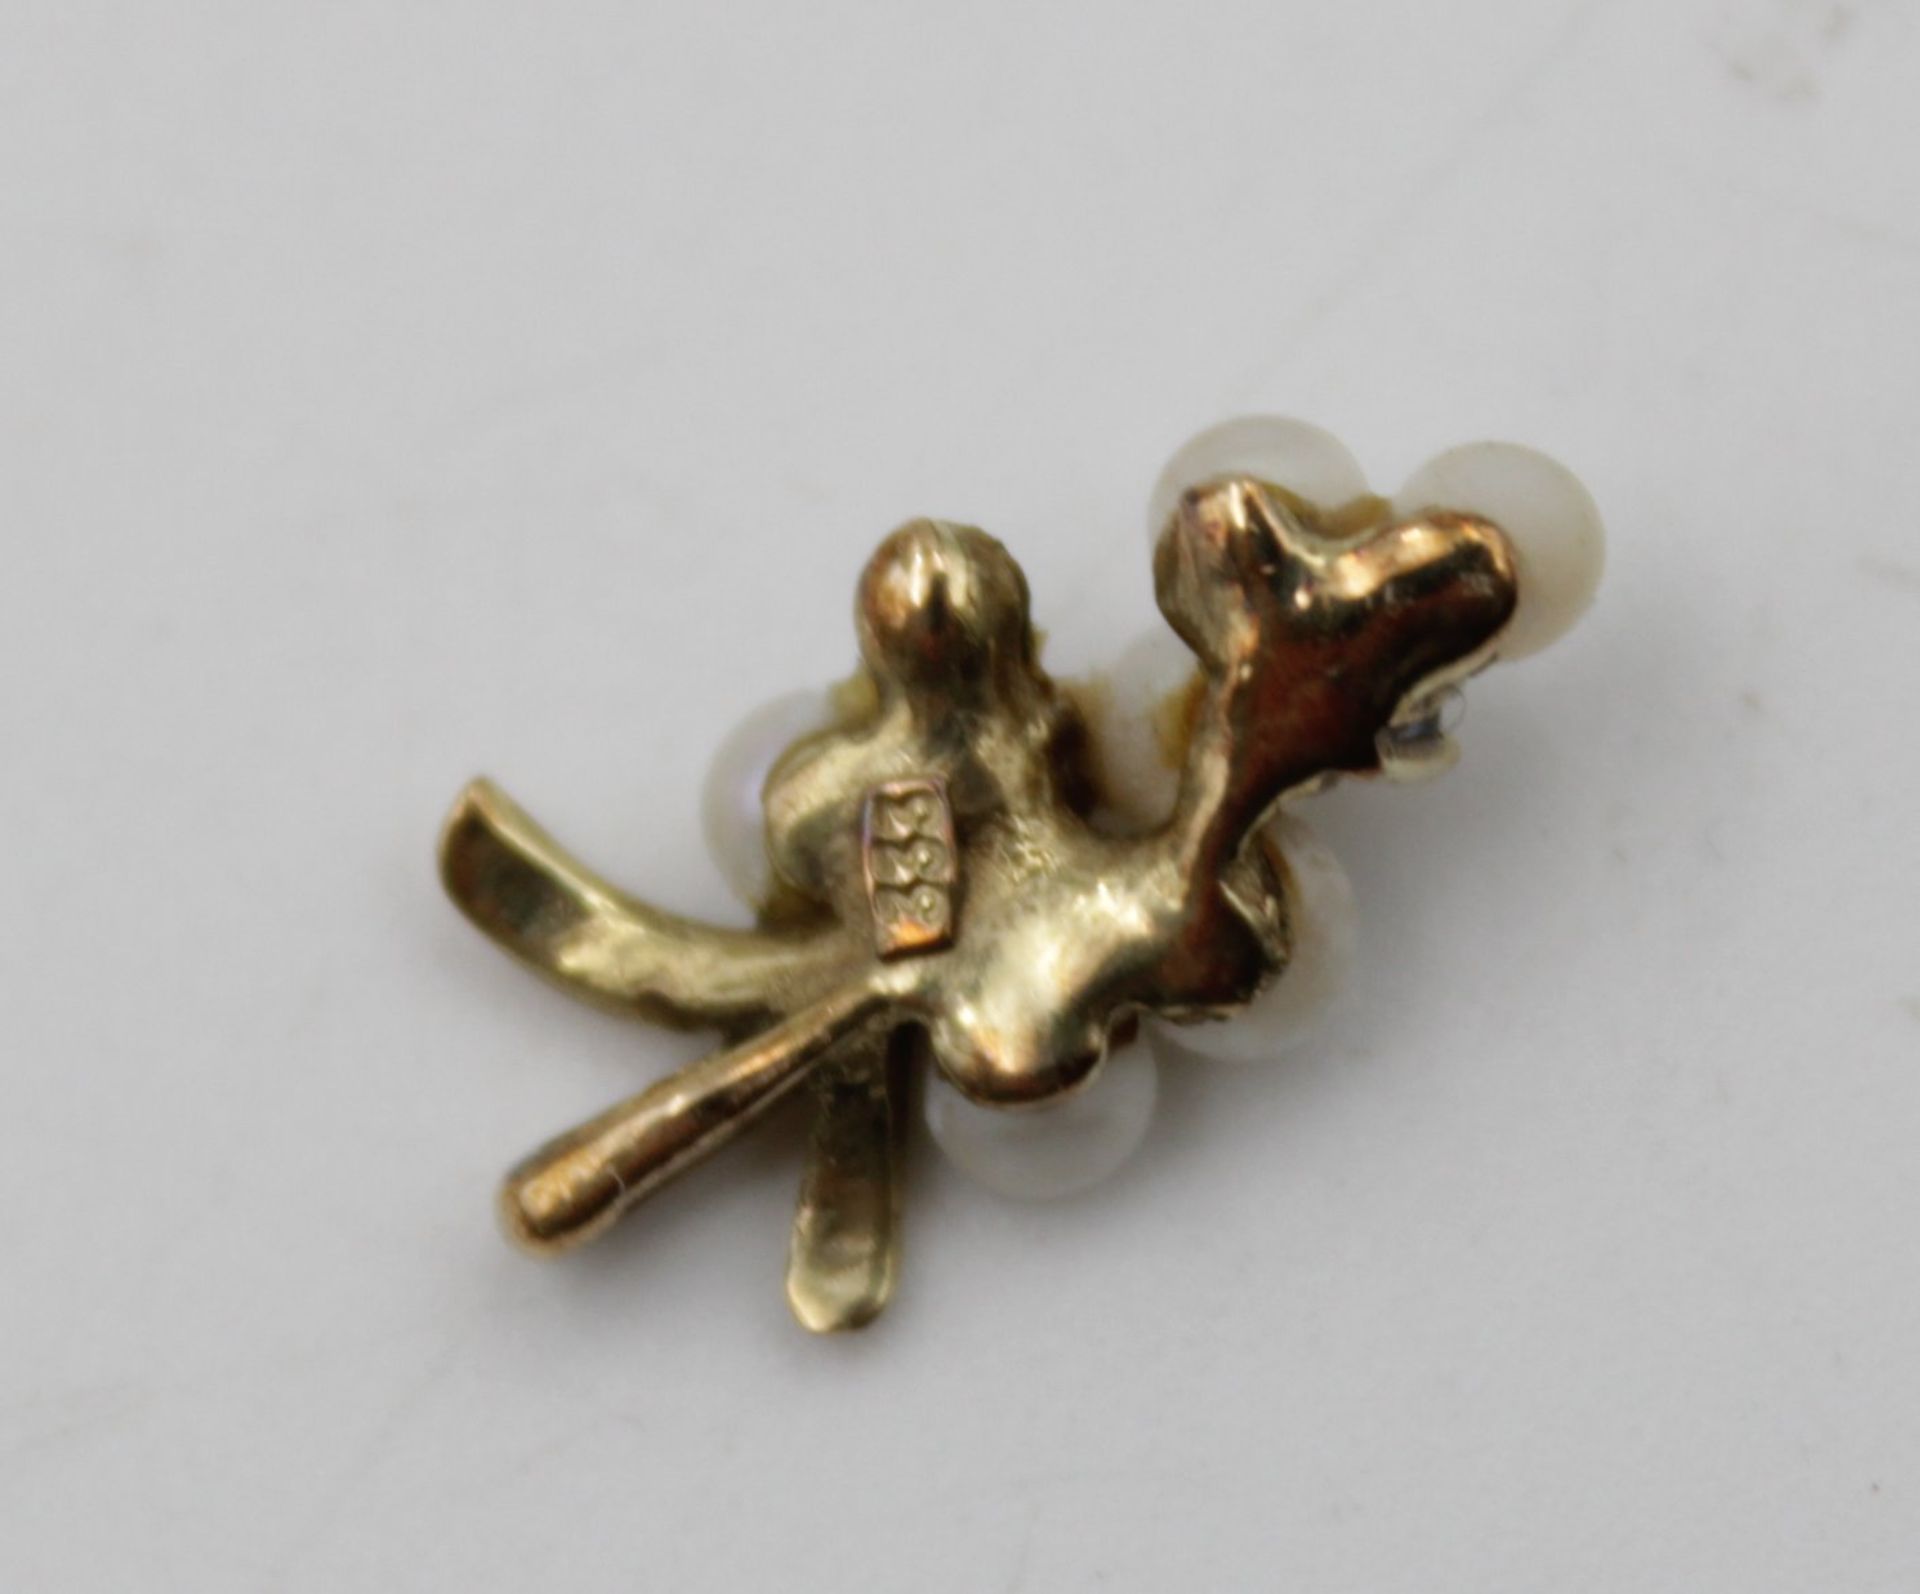 Anhänger Gold 333 mit Perlen Besatz u. Salire , eine Perle fehlt , L 1,7 cm zusammen 1,1gr. - Bild 4 aus 4